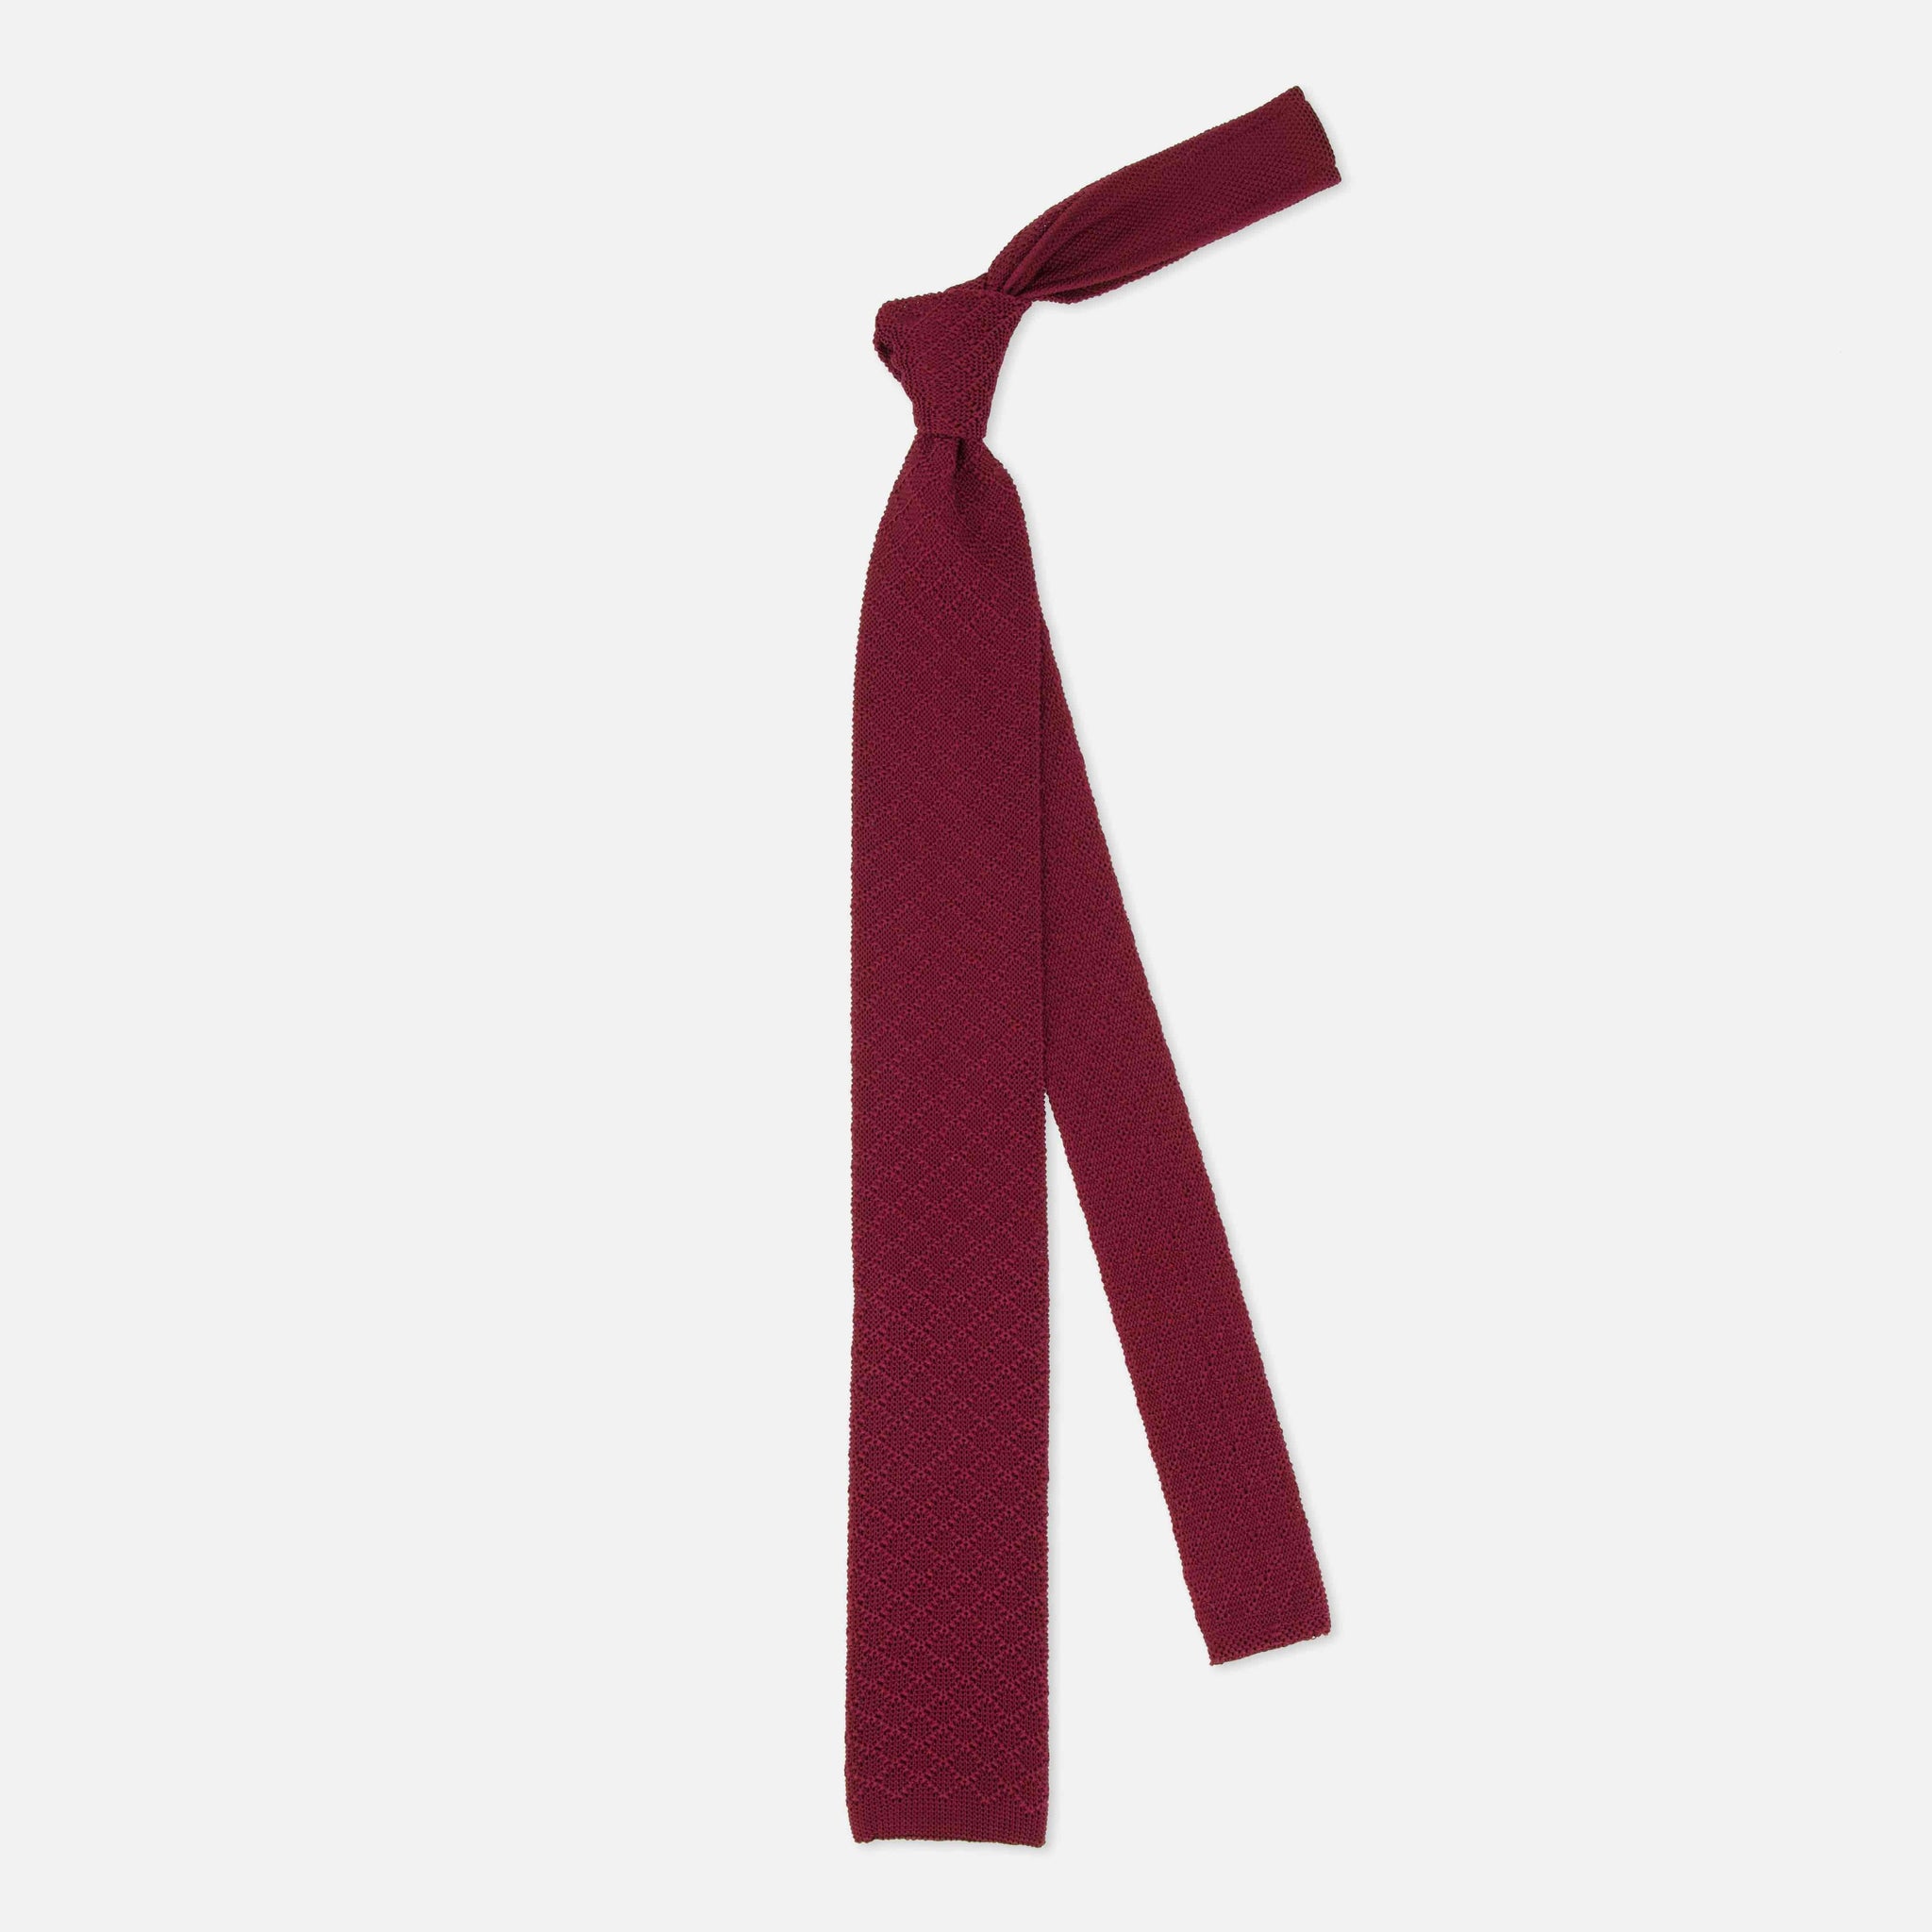 Diamond Knit Burgundy Tie by Tie Bar